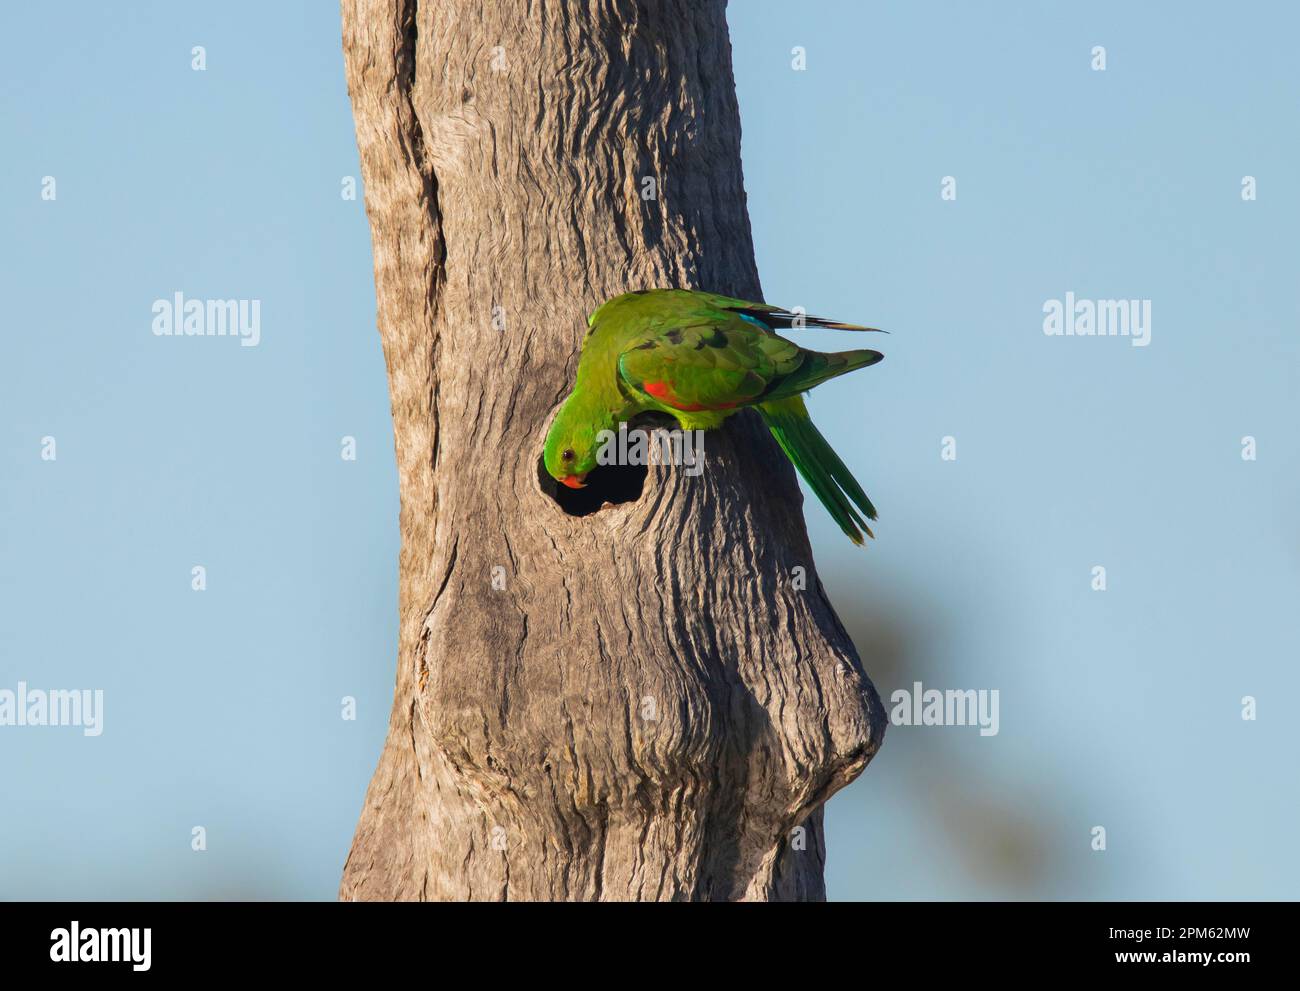 Perroquet ailé rouge, Apromsmictus erythropterus regardant dans son nid dans un tronc d'arbre creux. Banque D'Images